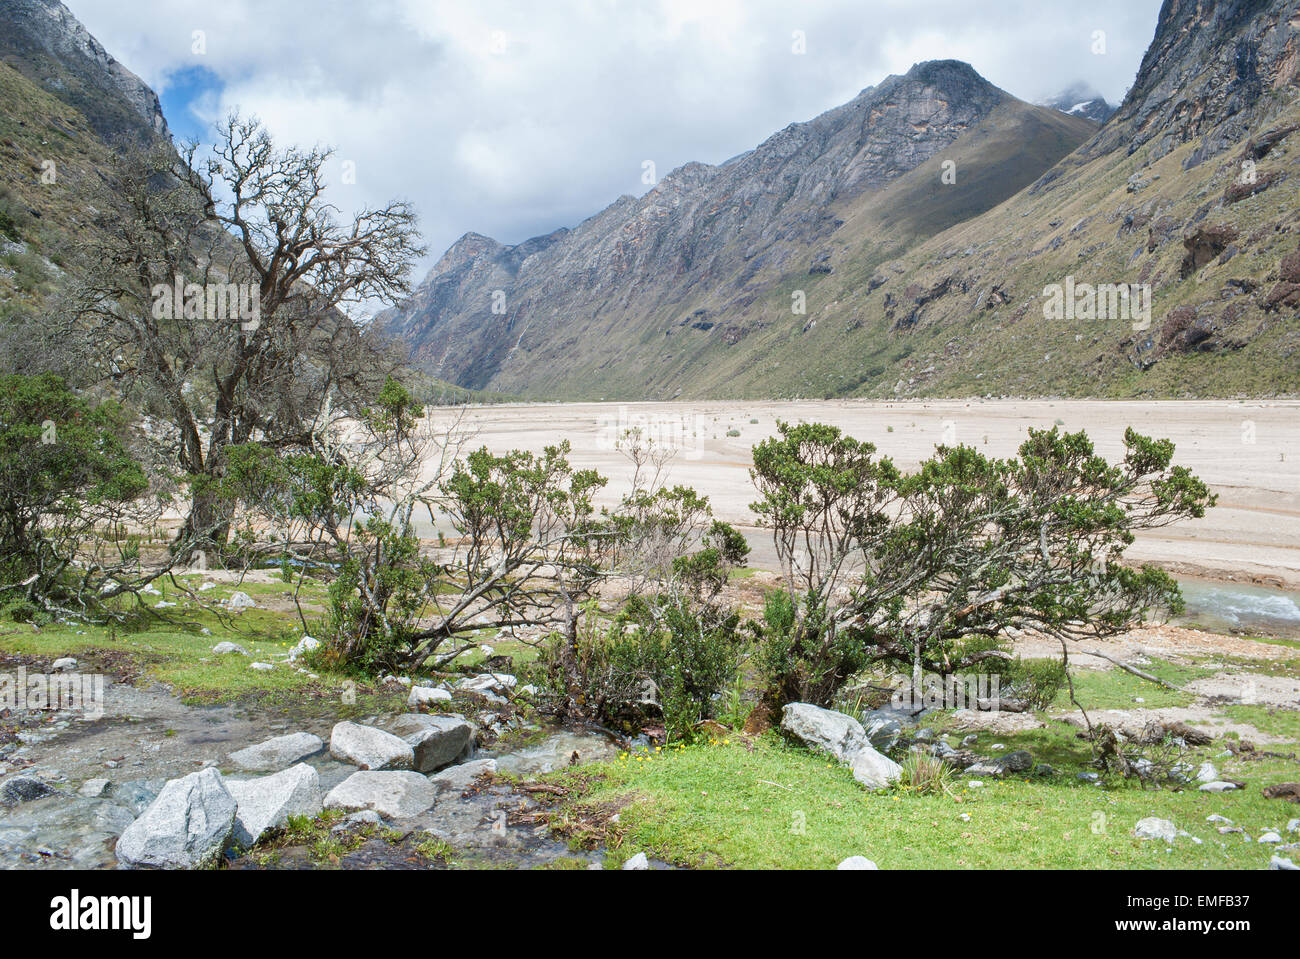 Peru - Blick vom Tal der Cordillera Blanca in den Anden von der Trek von Santa Cruz. Stockfoto